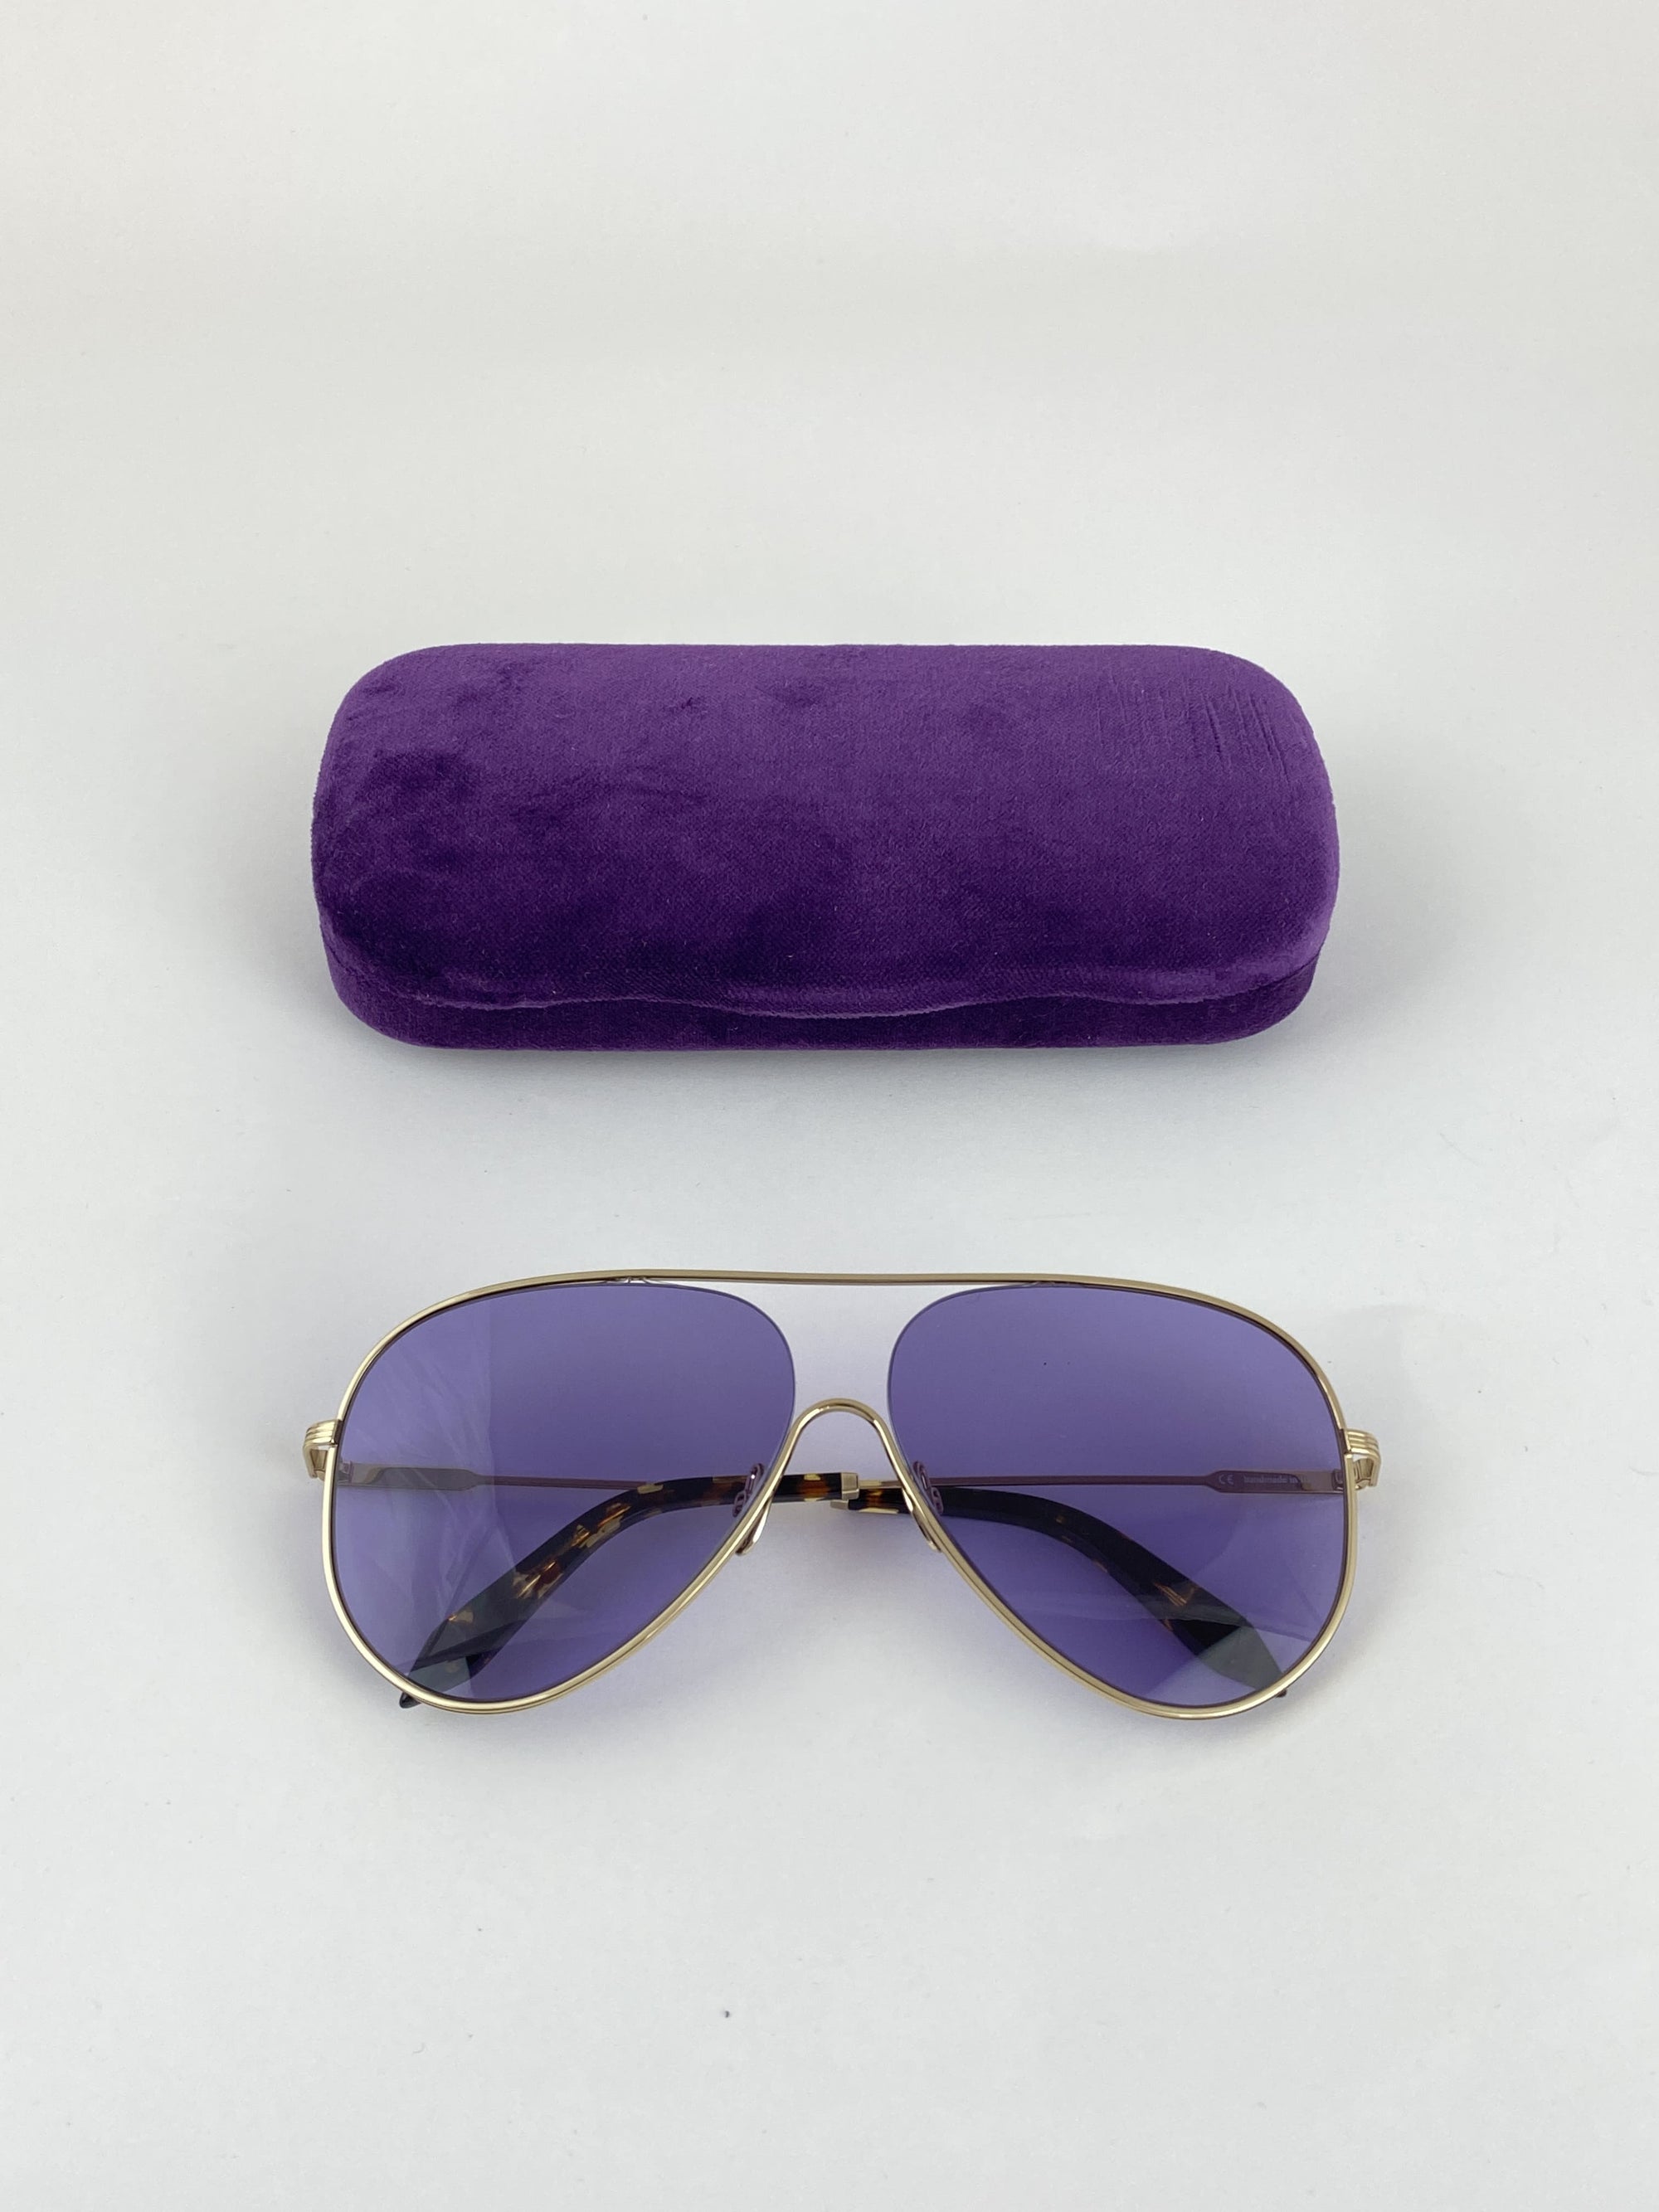 Produktbild der Victoria Beckham Pilot Sunglasses purple vor weißem Hintergrund.